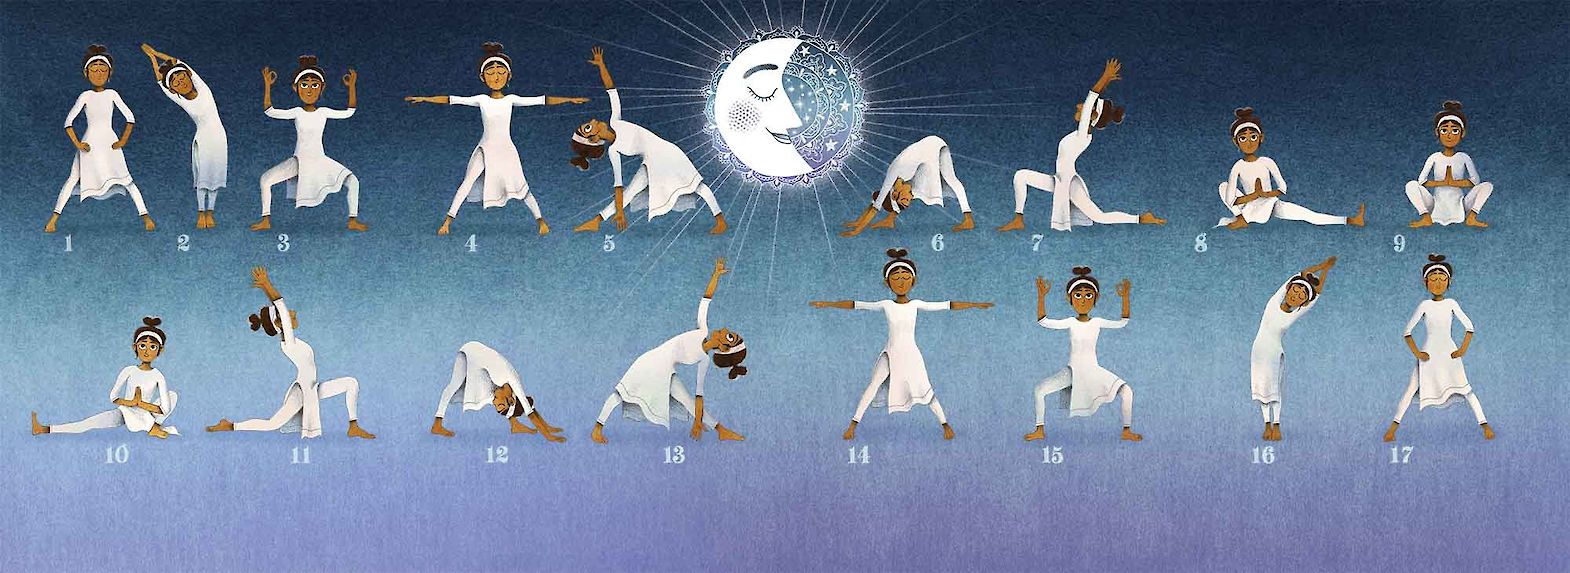 New Moon Yoga Sequence | Yoga sequences, Yoga themes, Yoga